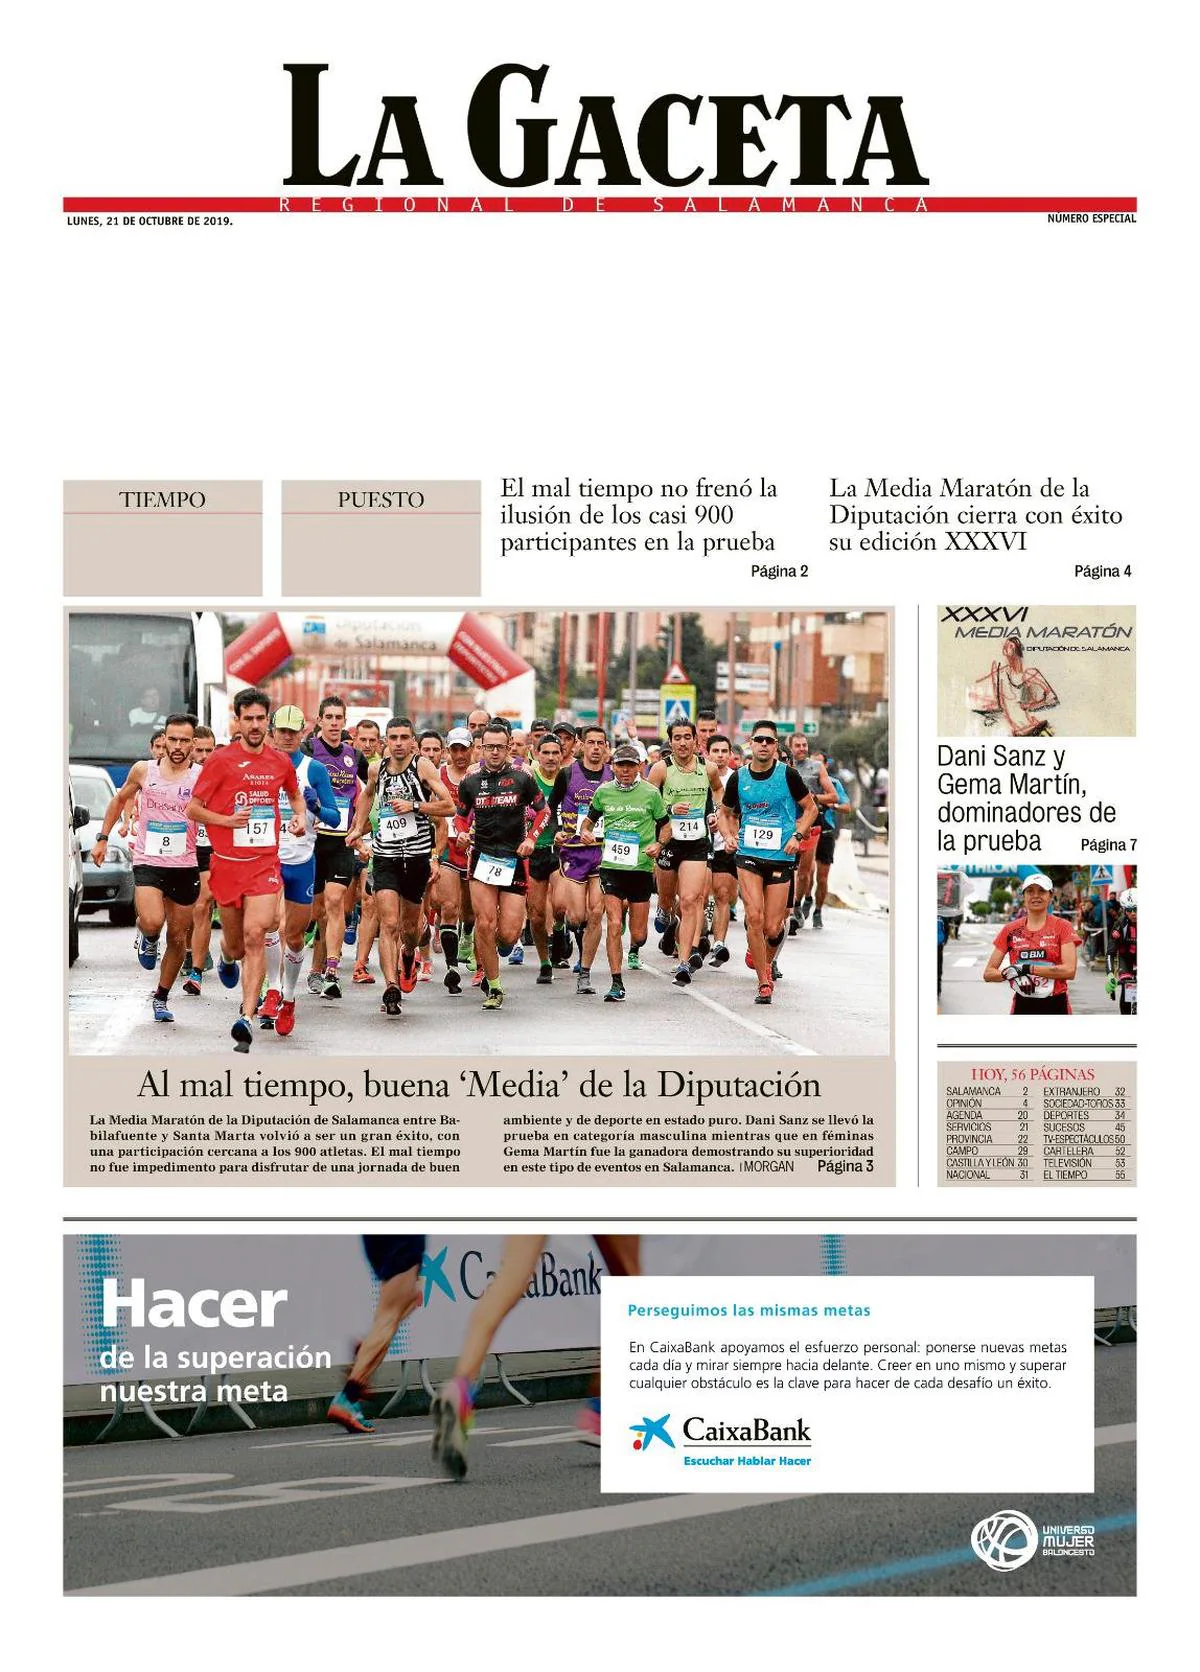 Descargue aquí su portada personalizada de LA GACETA de la XXXVI Media Maratón de la Diputación de Salamanca